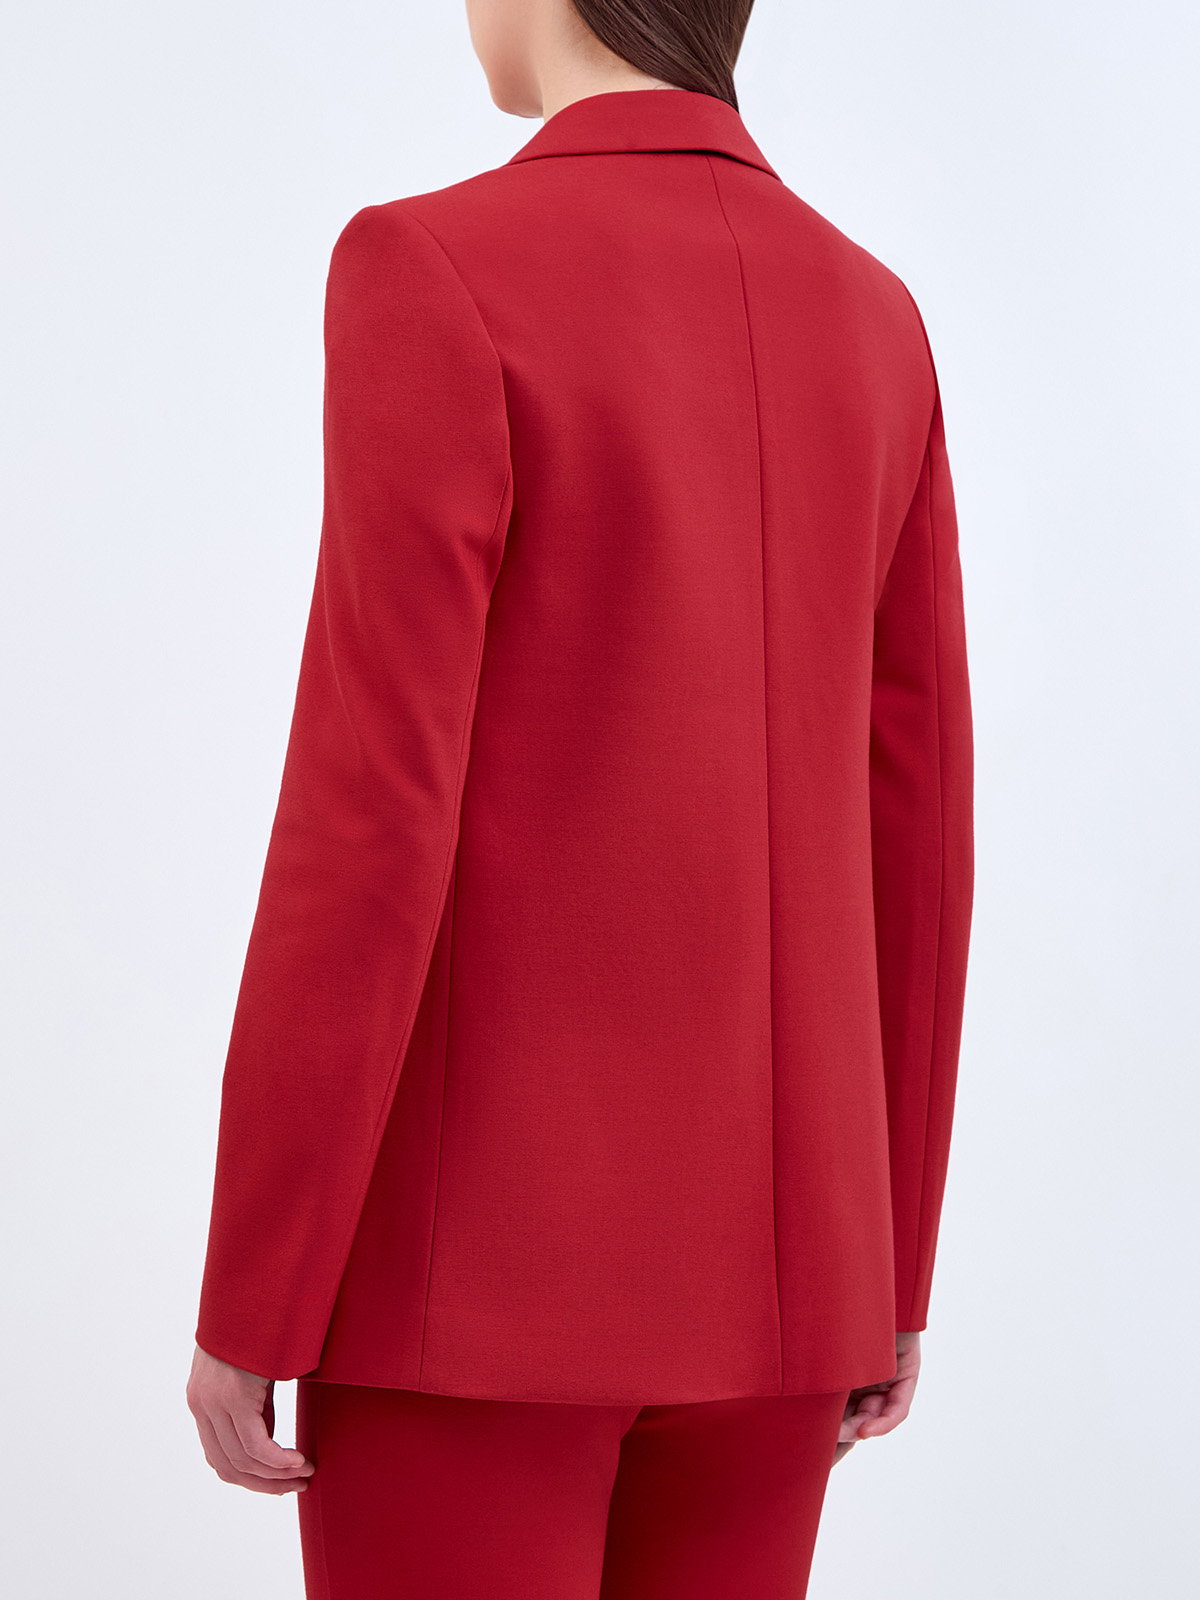 Однобортный жакет из гладкой ткани Punto с вышитым логотипом KARL LAGERFELD, цвет красный, размер M;L;XL - фото 4